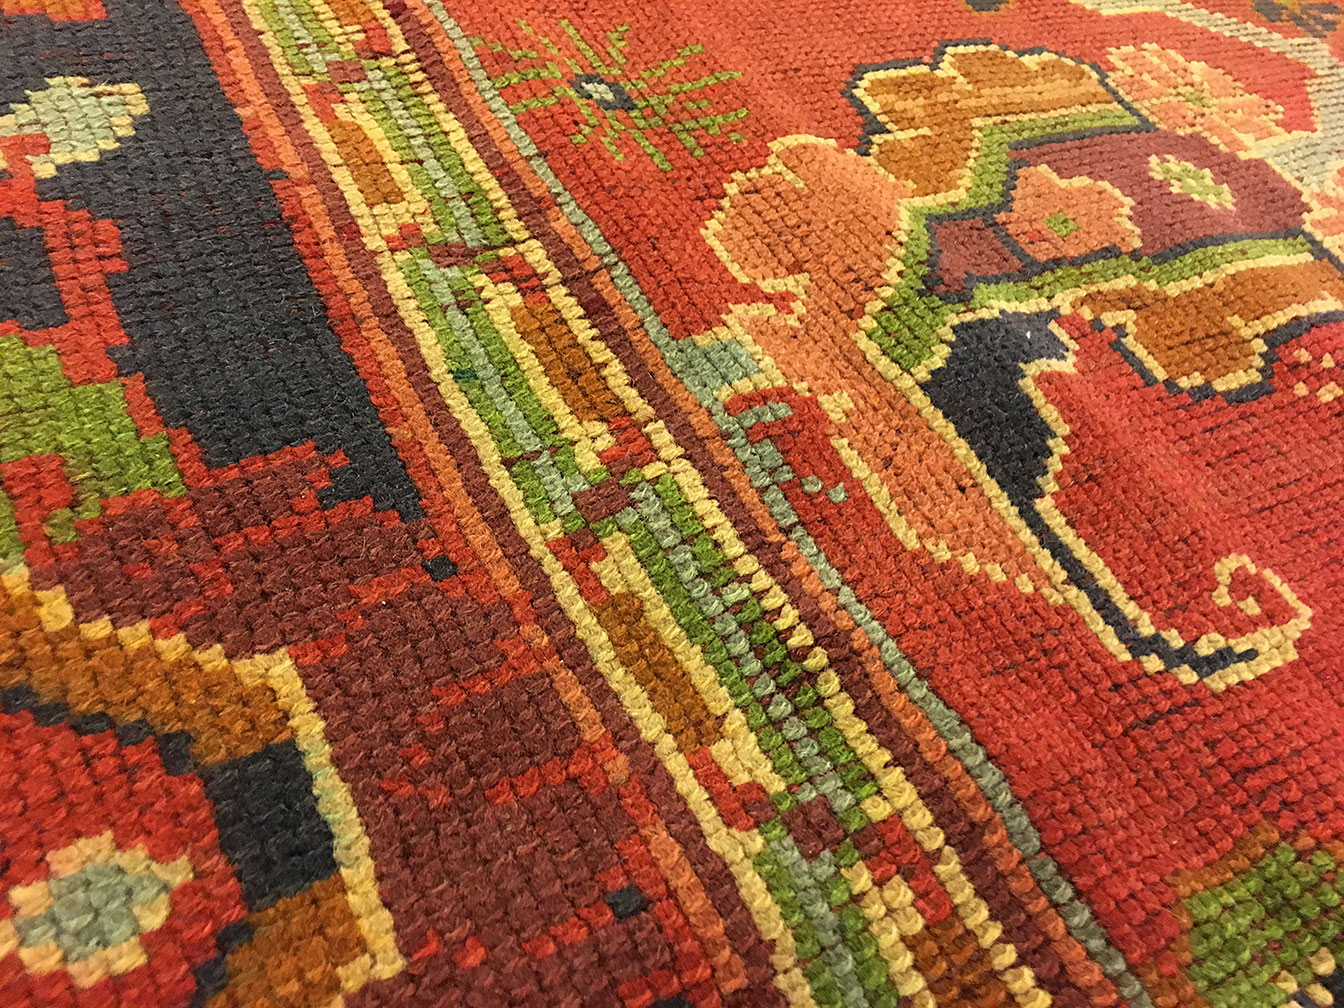 Antique donegal Carpet - # 52940